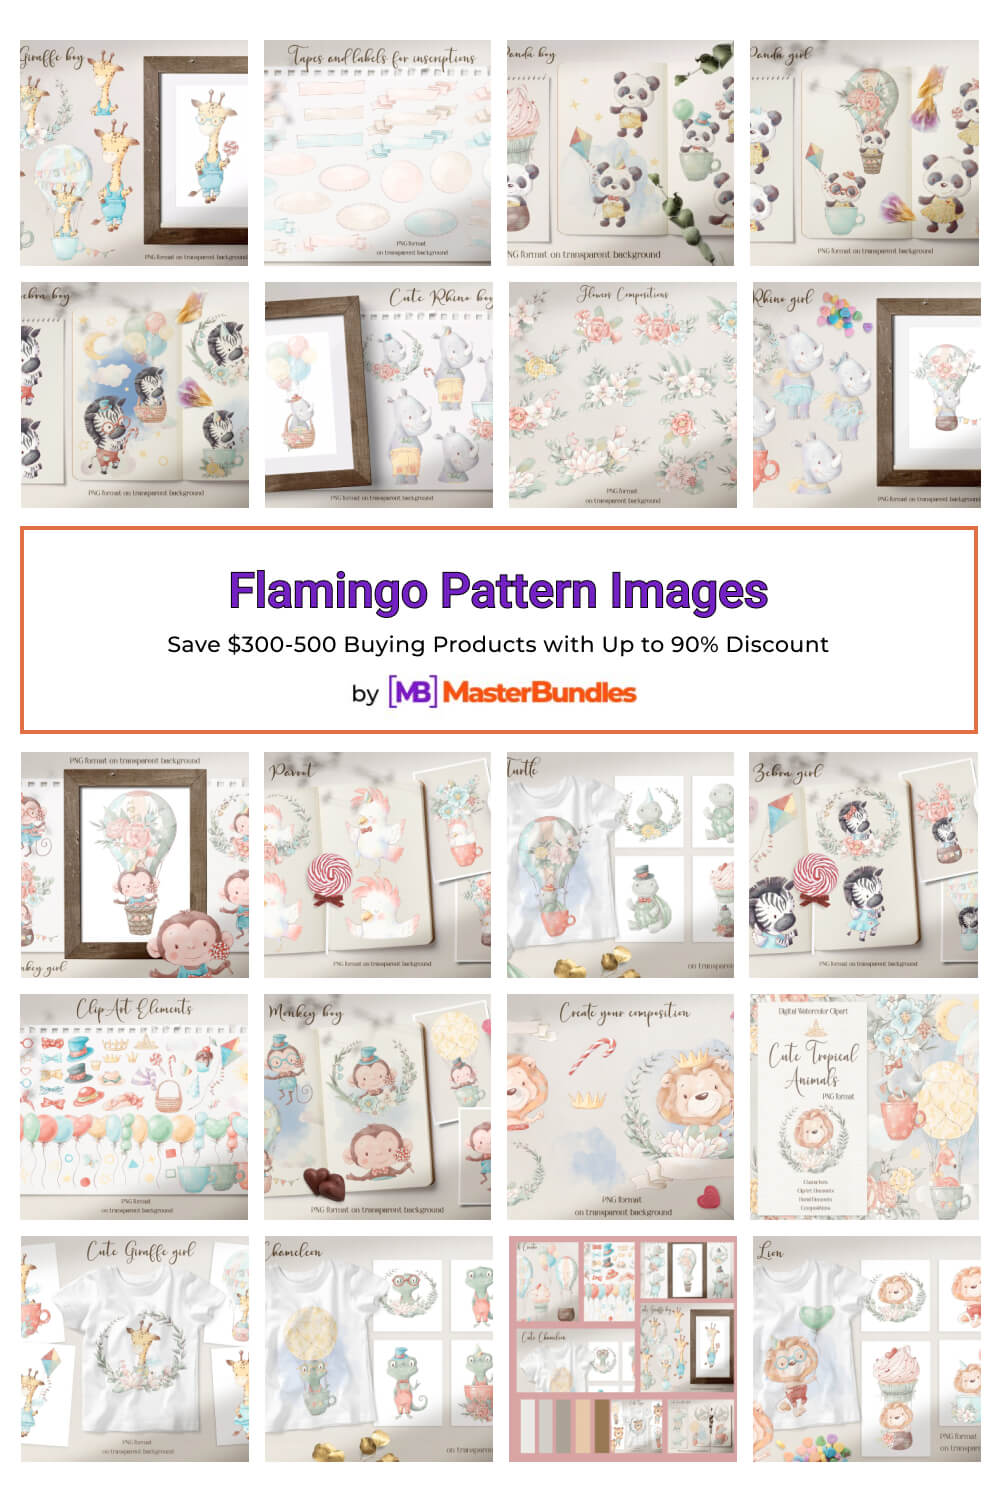 flamingo pattern images pinterest image.